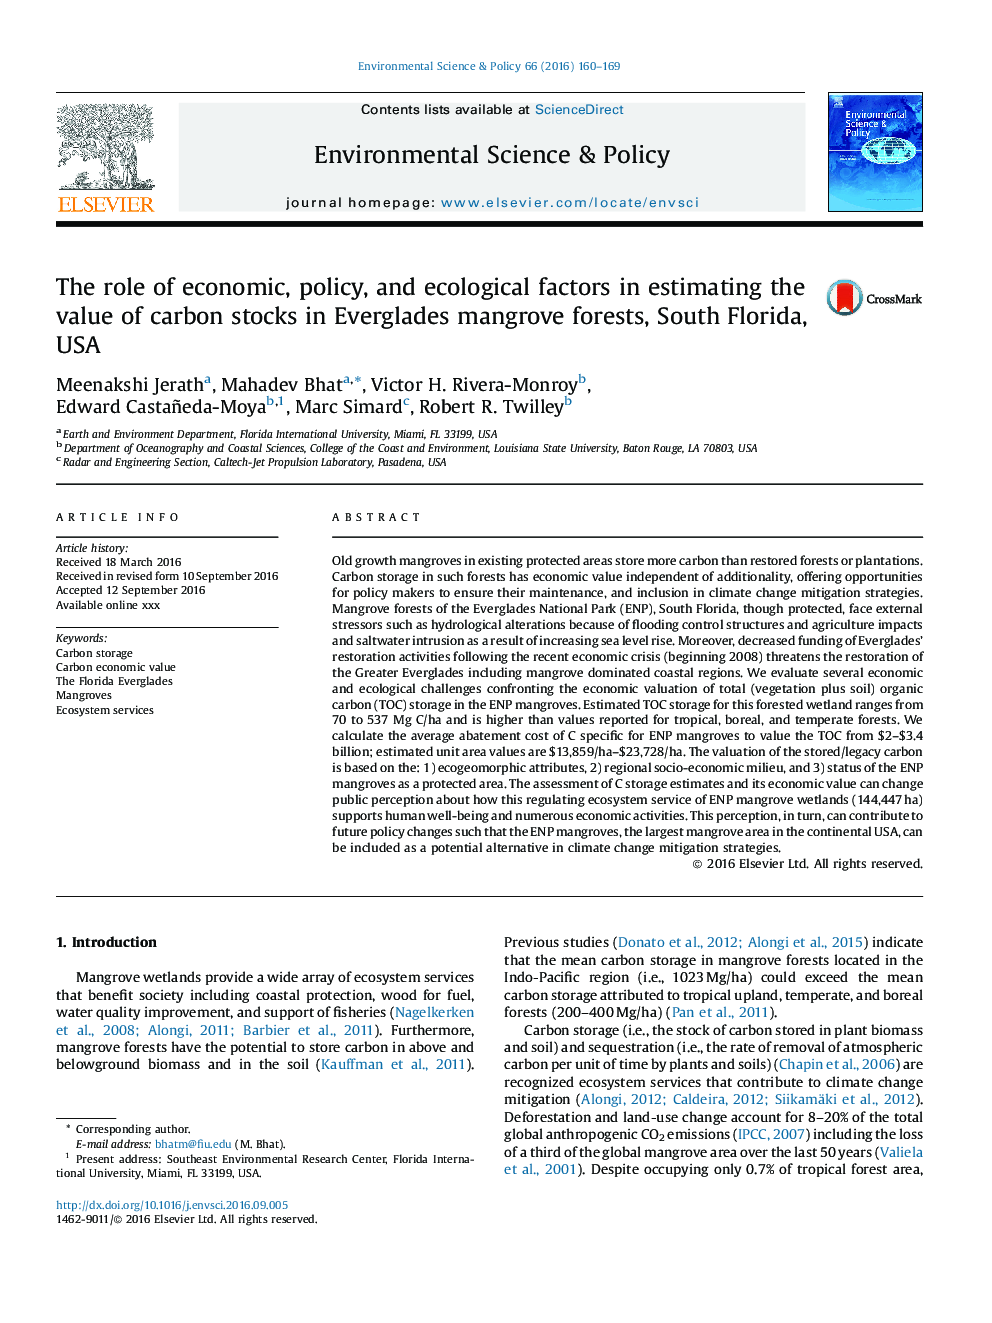 نقش عوامل اقتصادی، سیاستگذاری و زیست محیطی در برآورد ارزش ذخایر کربن در جنگلهای مانگرو اورگلیدز، فلوریدا جنوبی، ایالات متحده آمریکا 